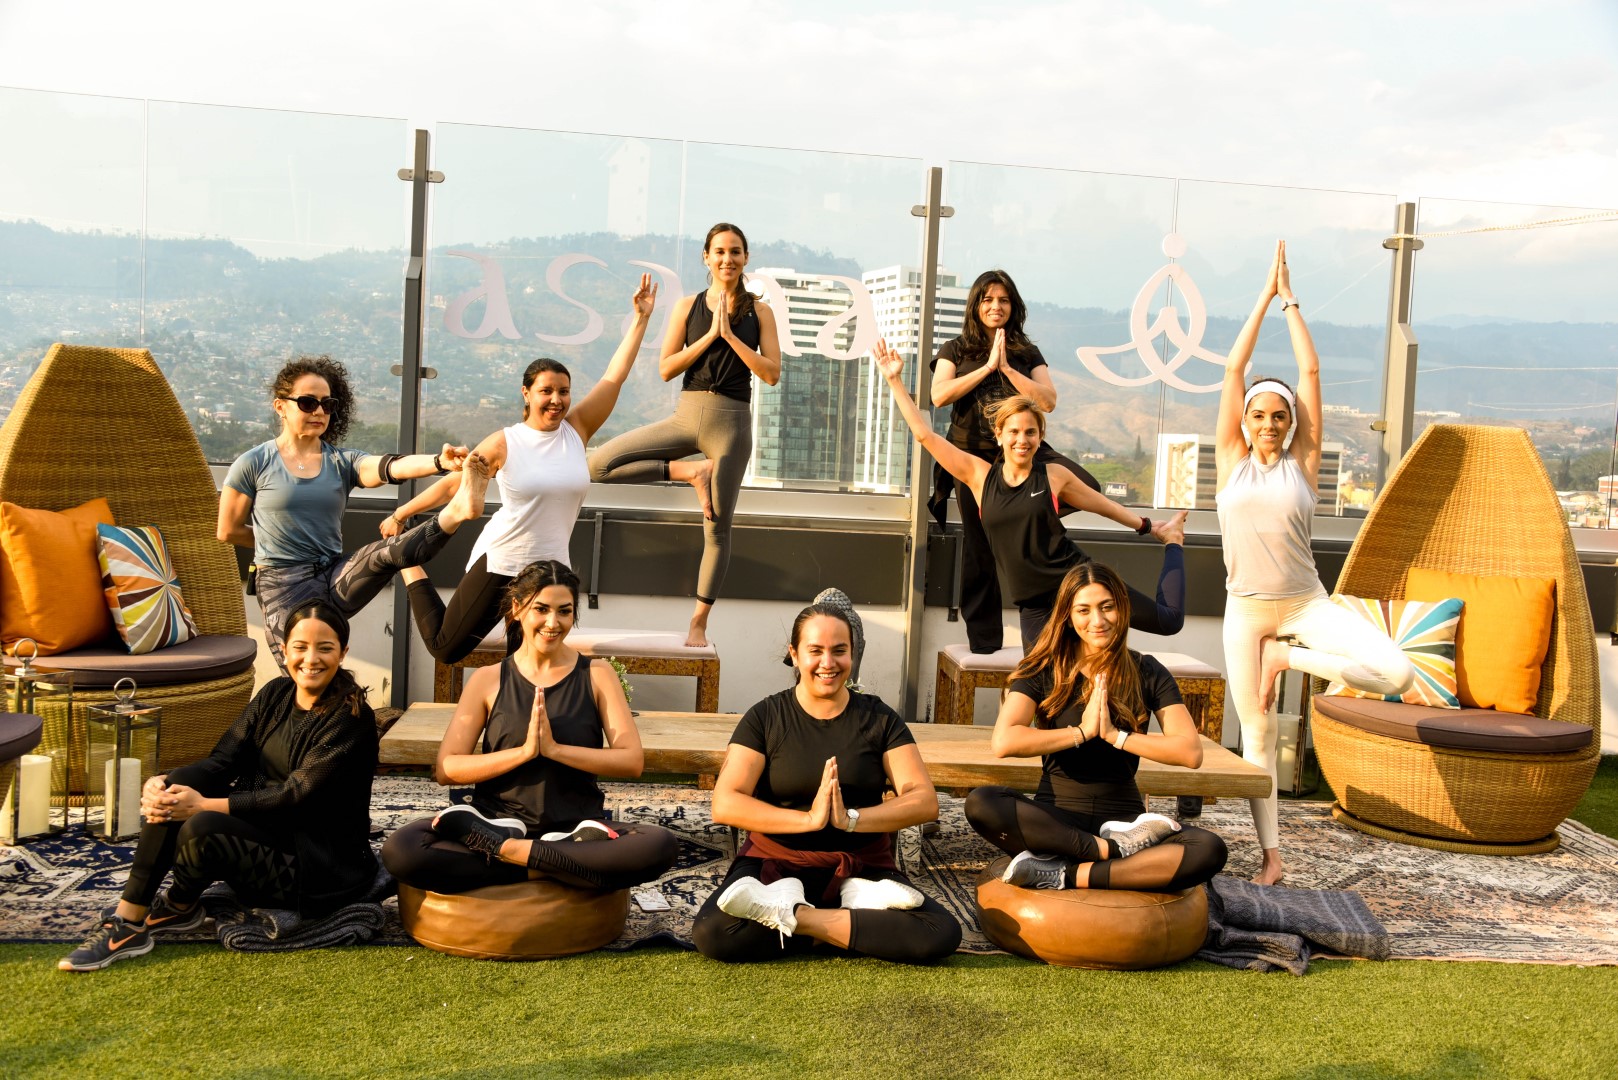 Asana Yoga y Michelob Ultra regalan experiencia única en el Rooftop Yoga 2019